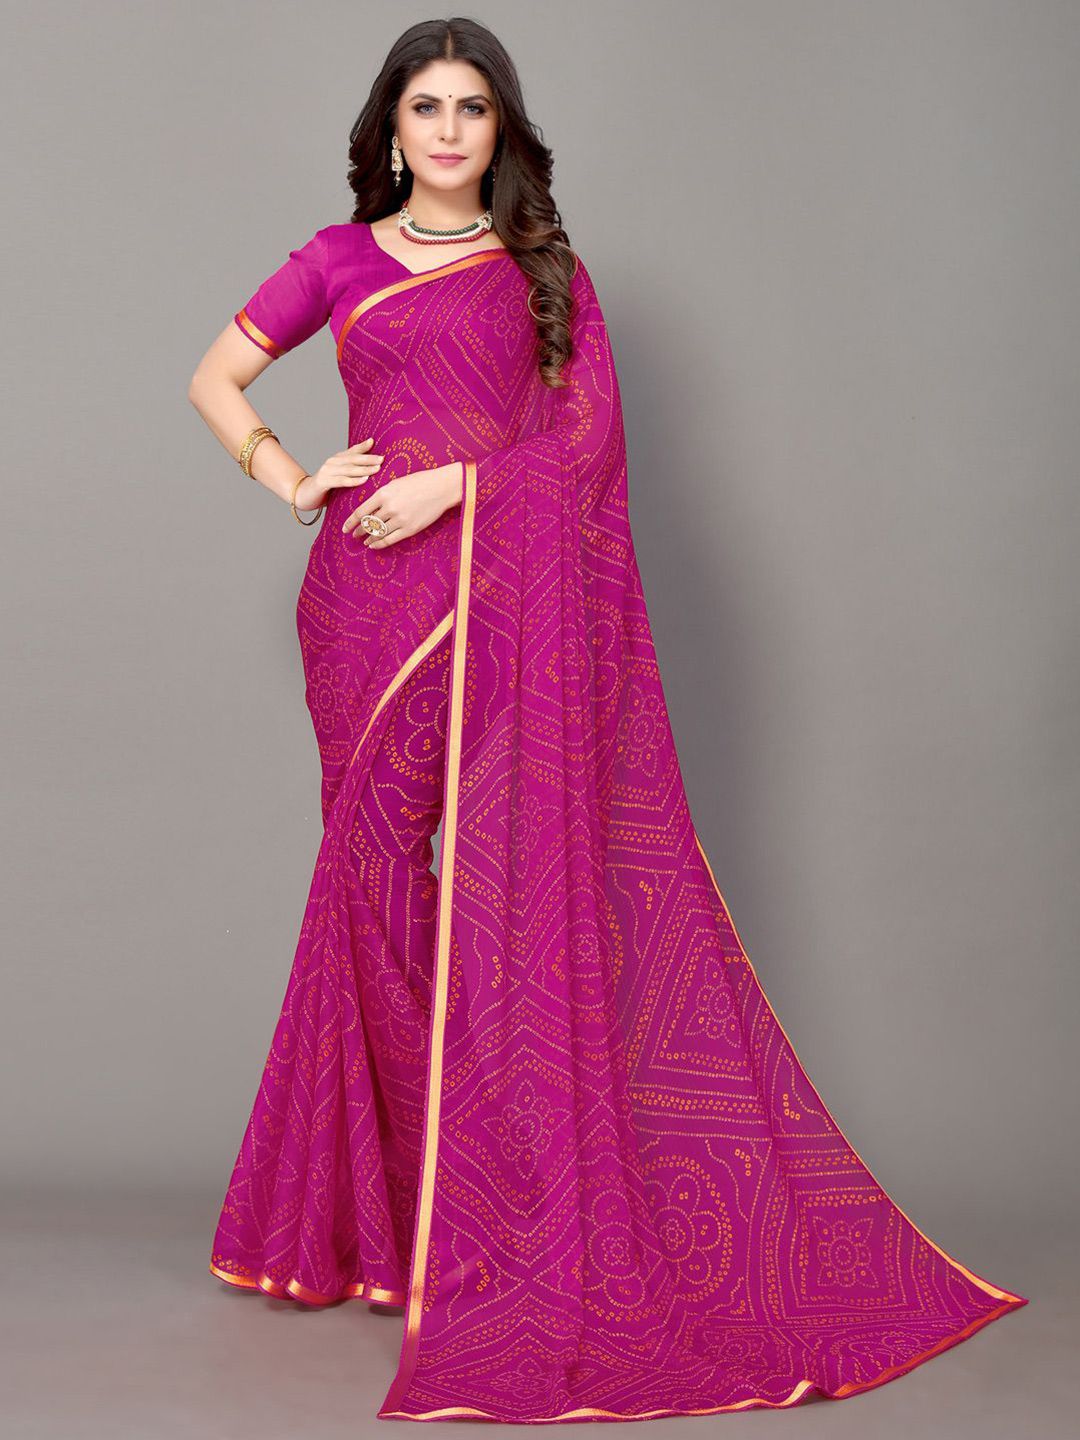 KALINI Pink & Gold-Toned Bandhani Zari Bandhani Saree Price in India